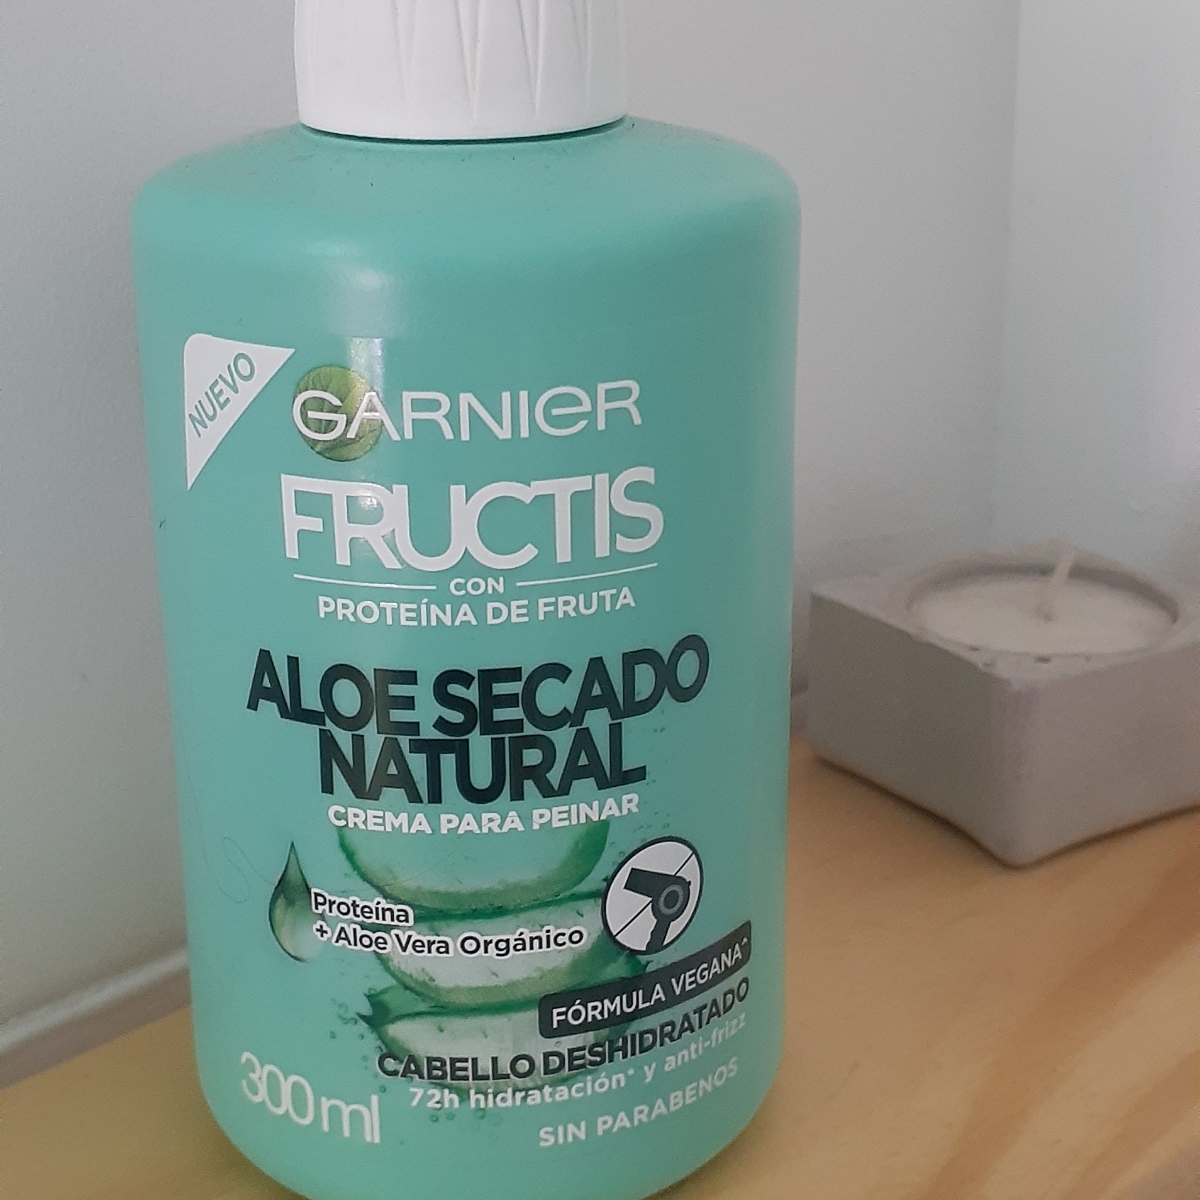 Garnier Garnier Fructis Aloe Secado Natural Crema para Peinar Reviews |  abillion